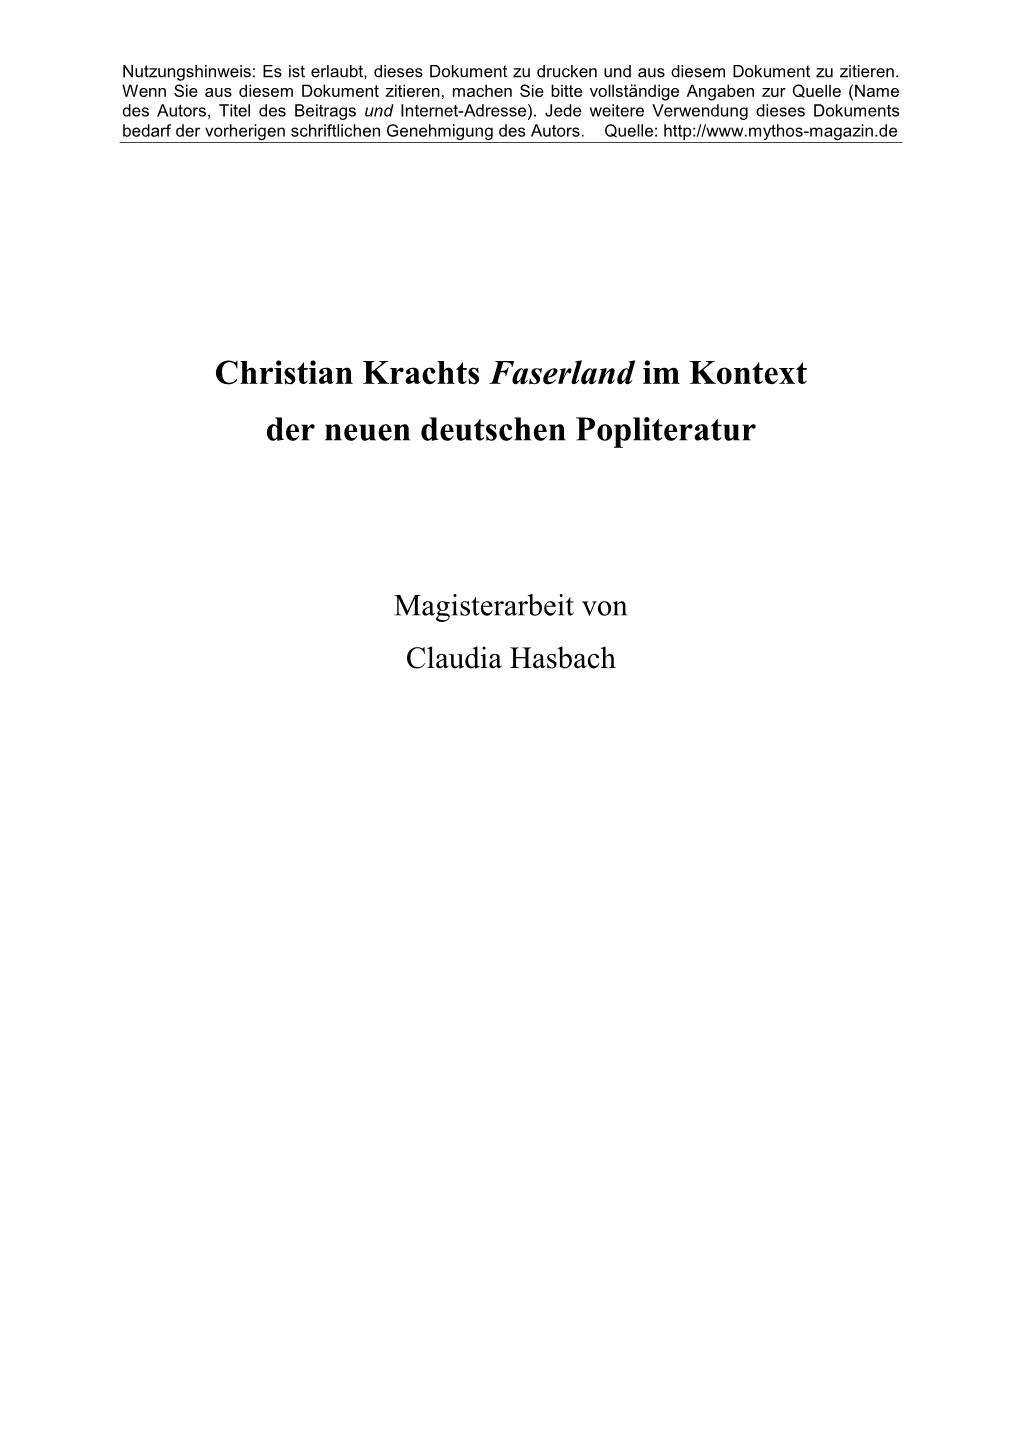 Christian Krachts Faserland Im Kontext Der Neuen Deutschen Popliteratur